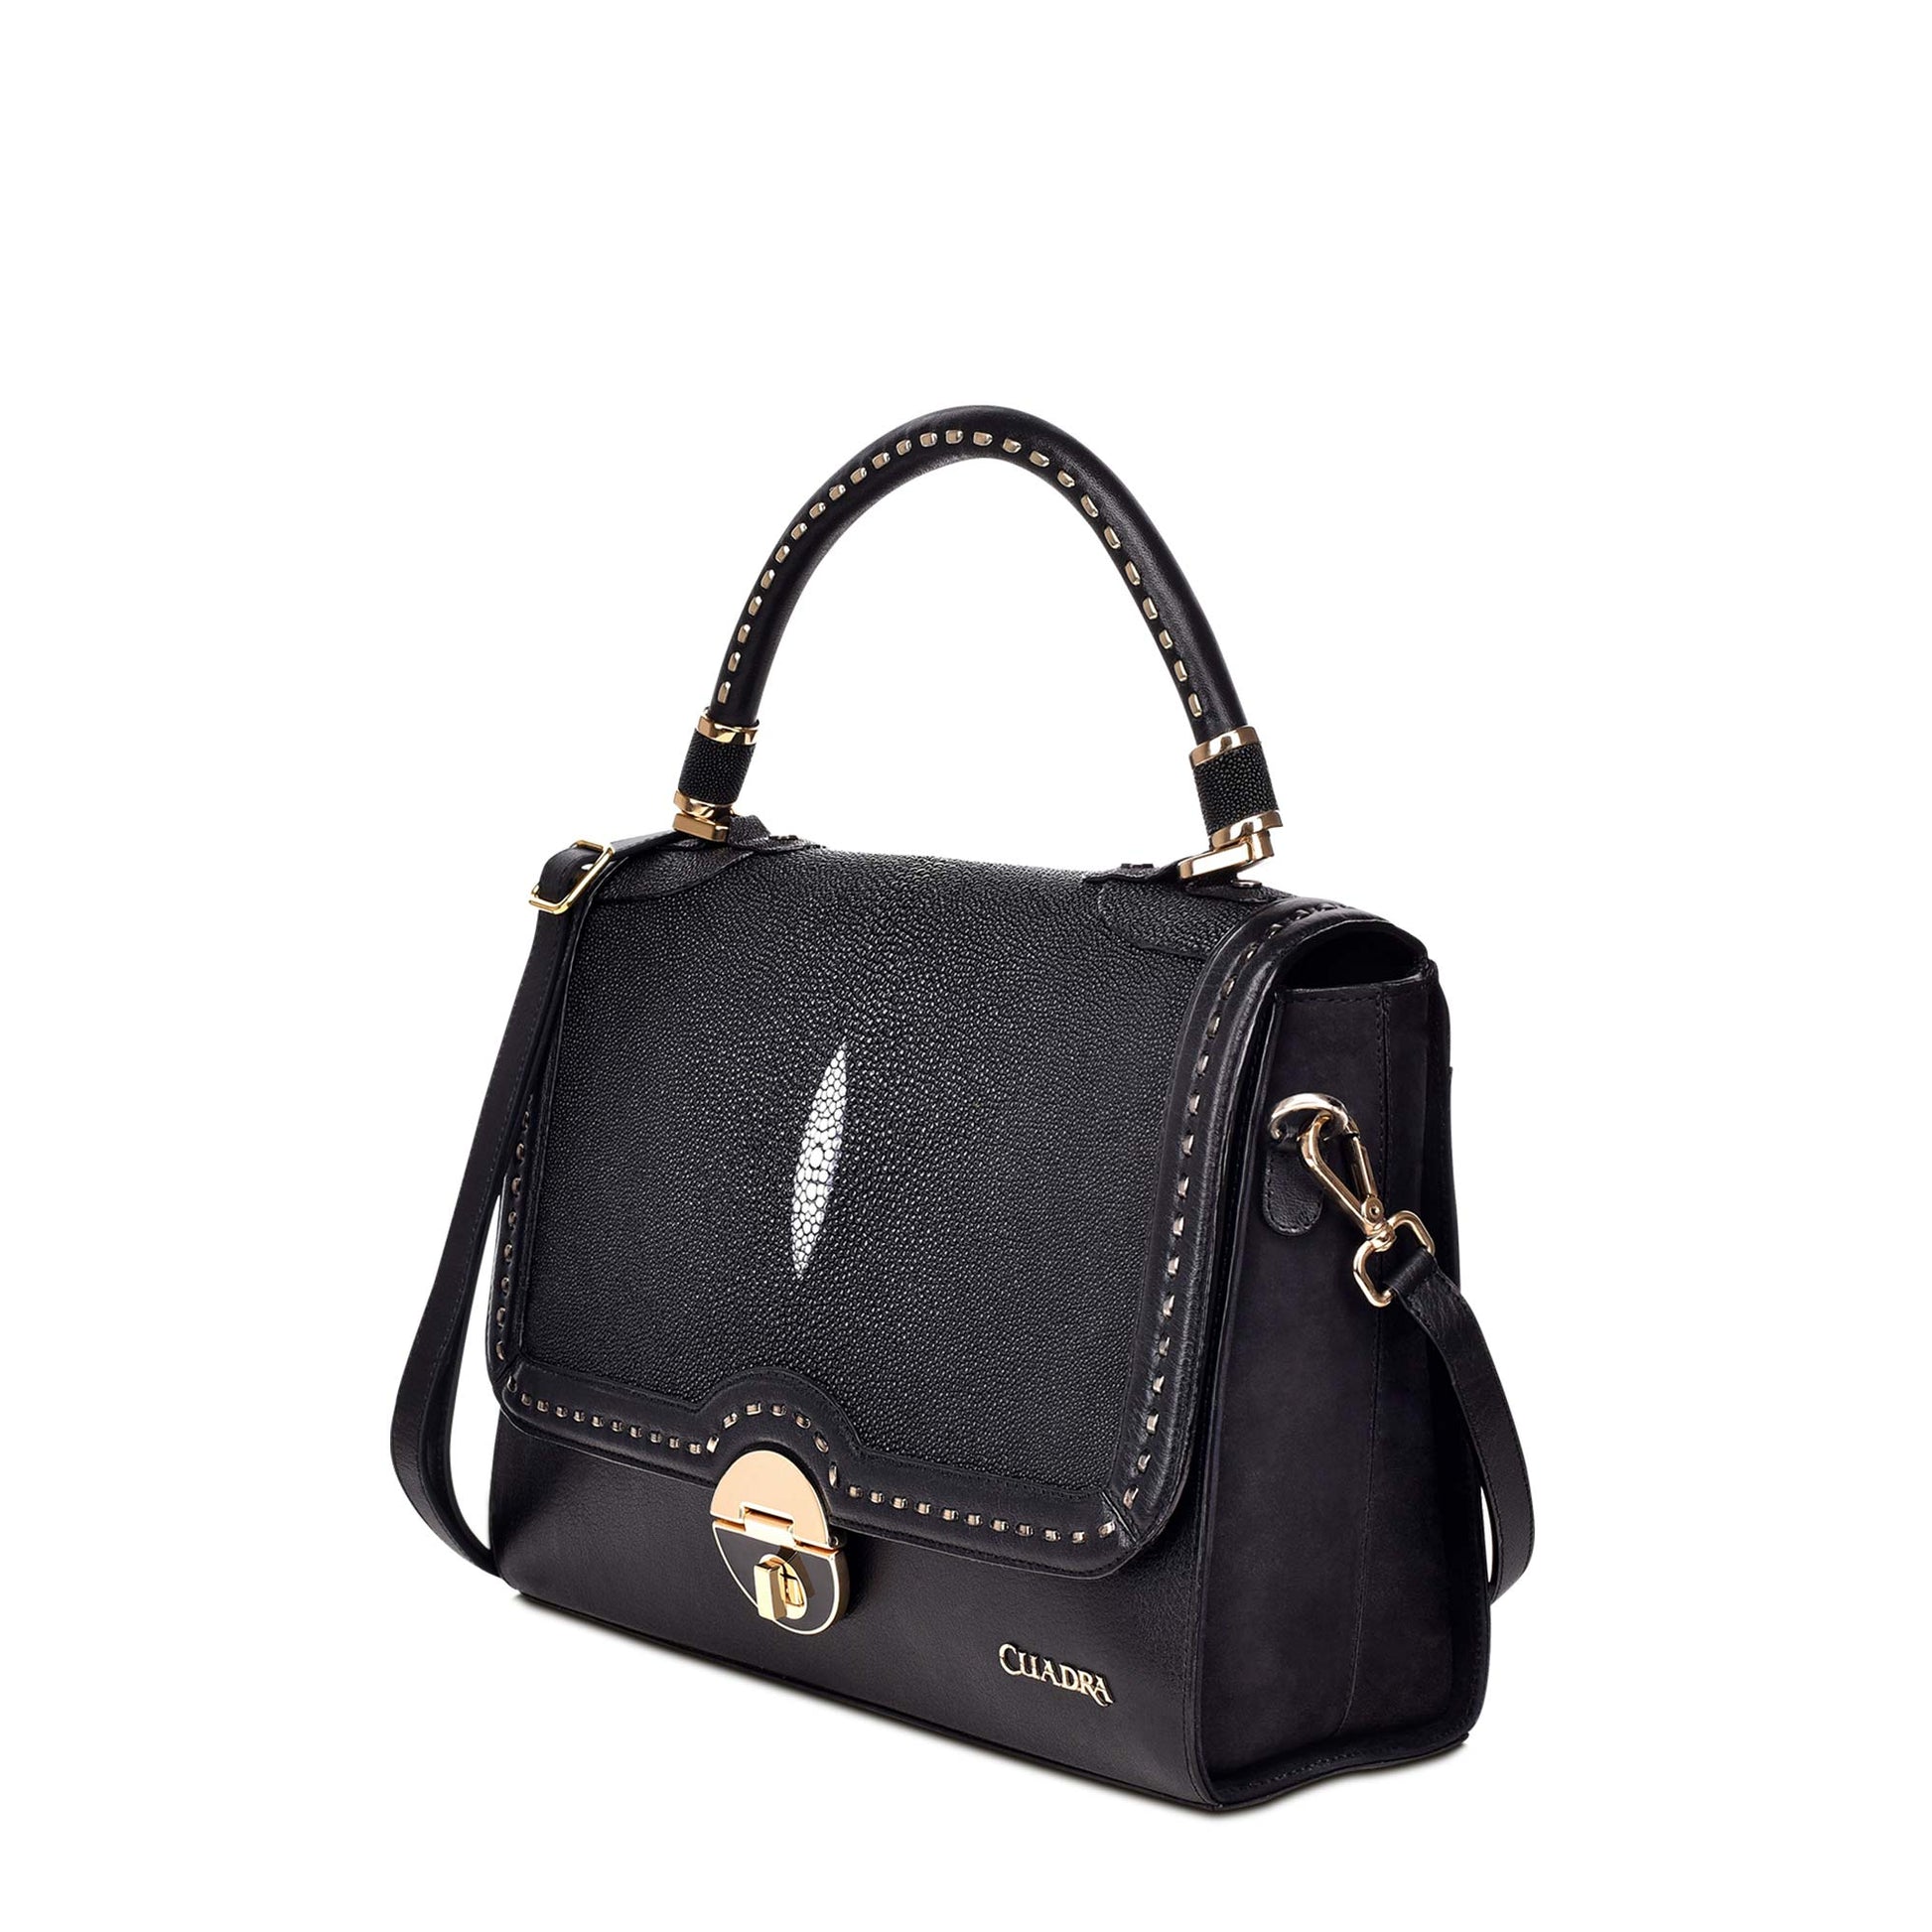 Genuine Leather Bag Strap Handbags Handles For Handbag Short Bag Strap  Purse Strap Golden Buckle